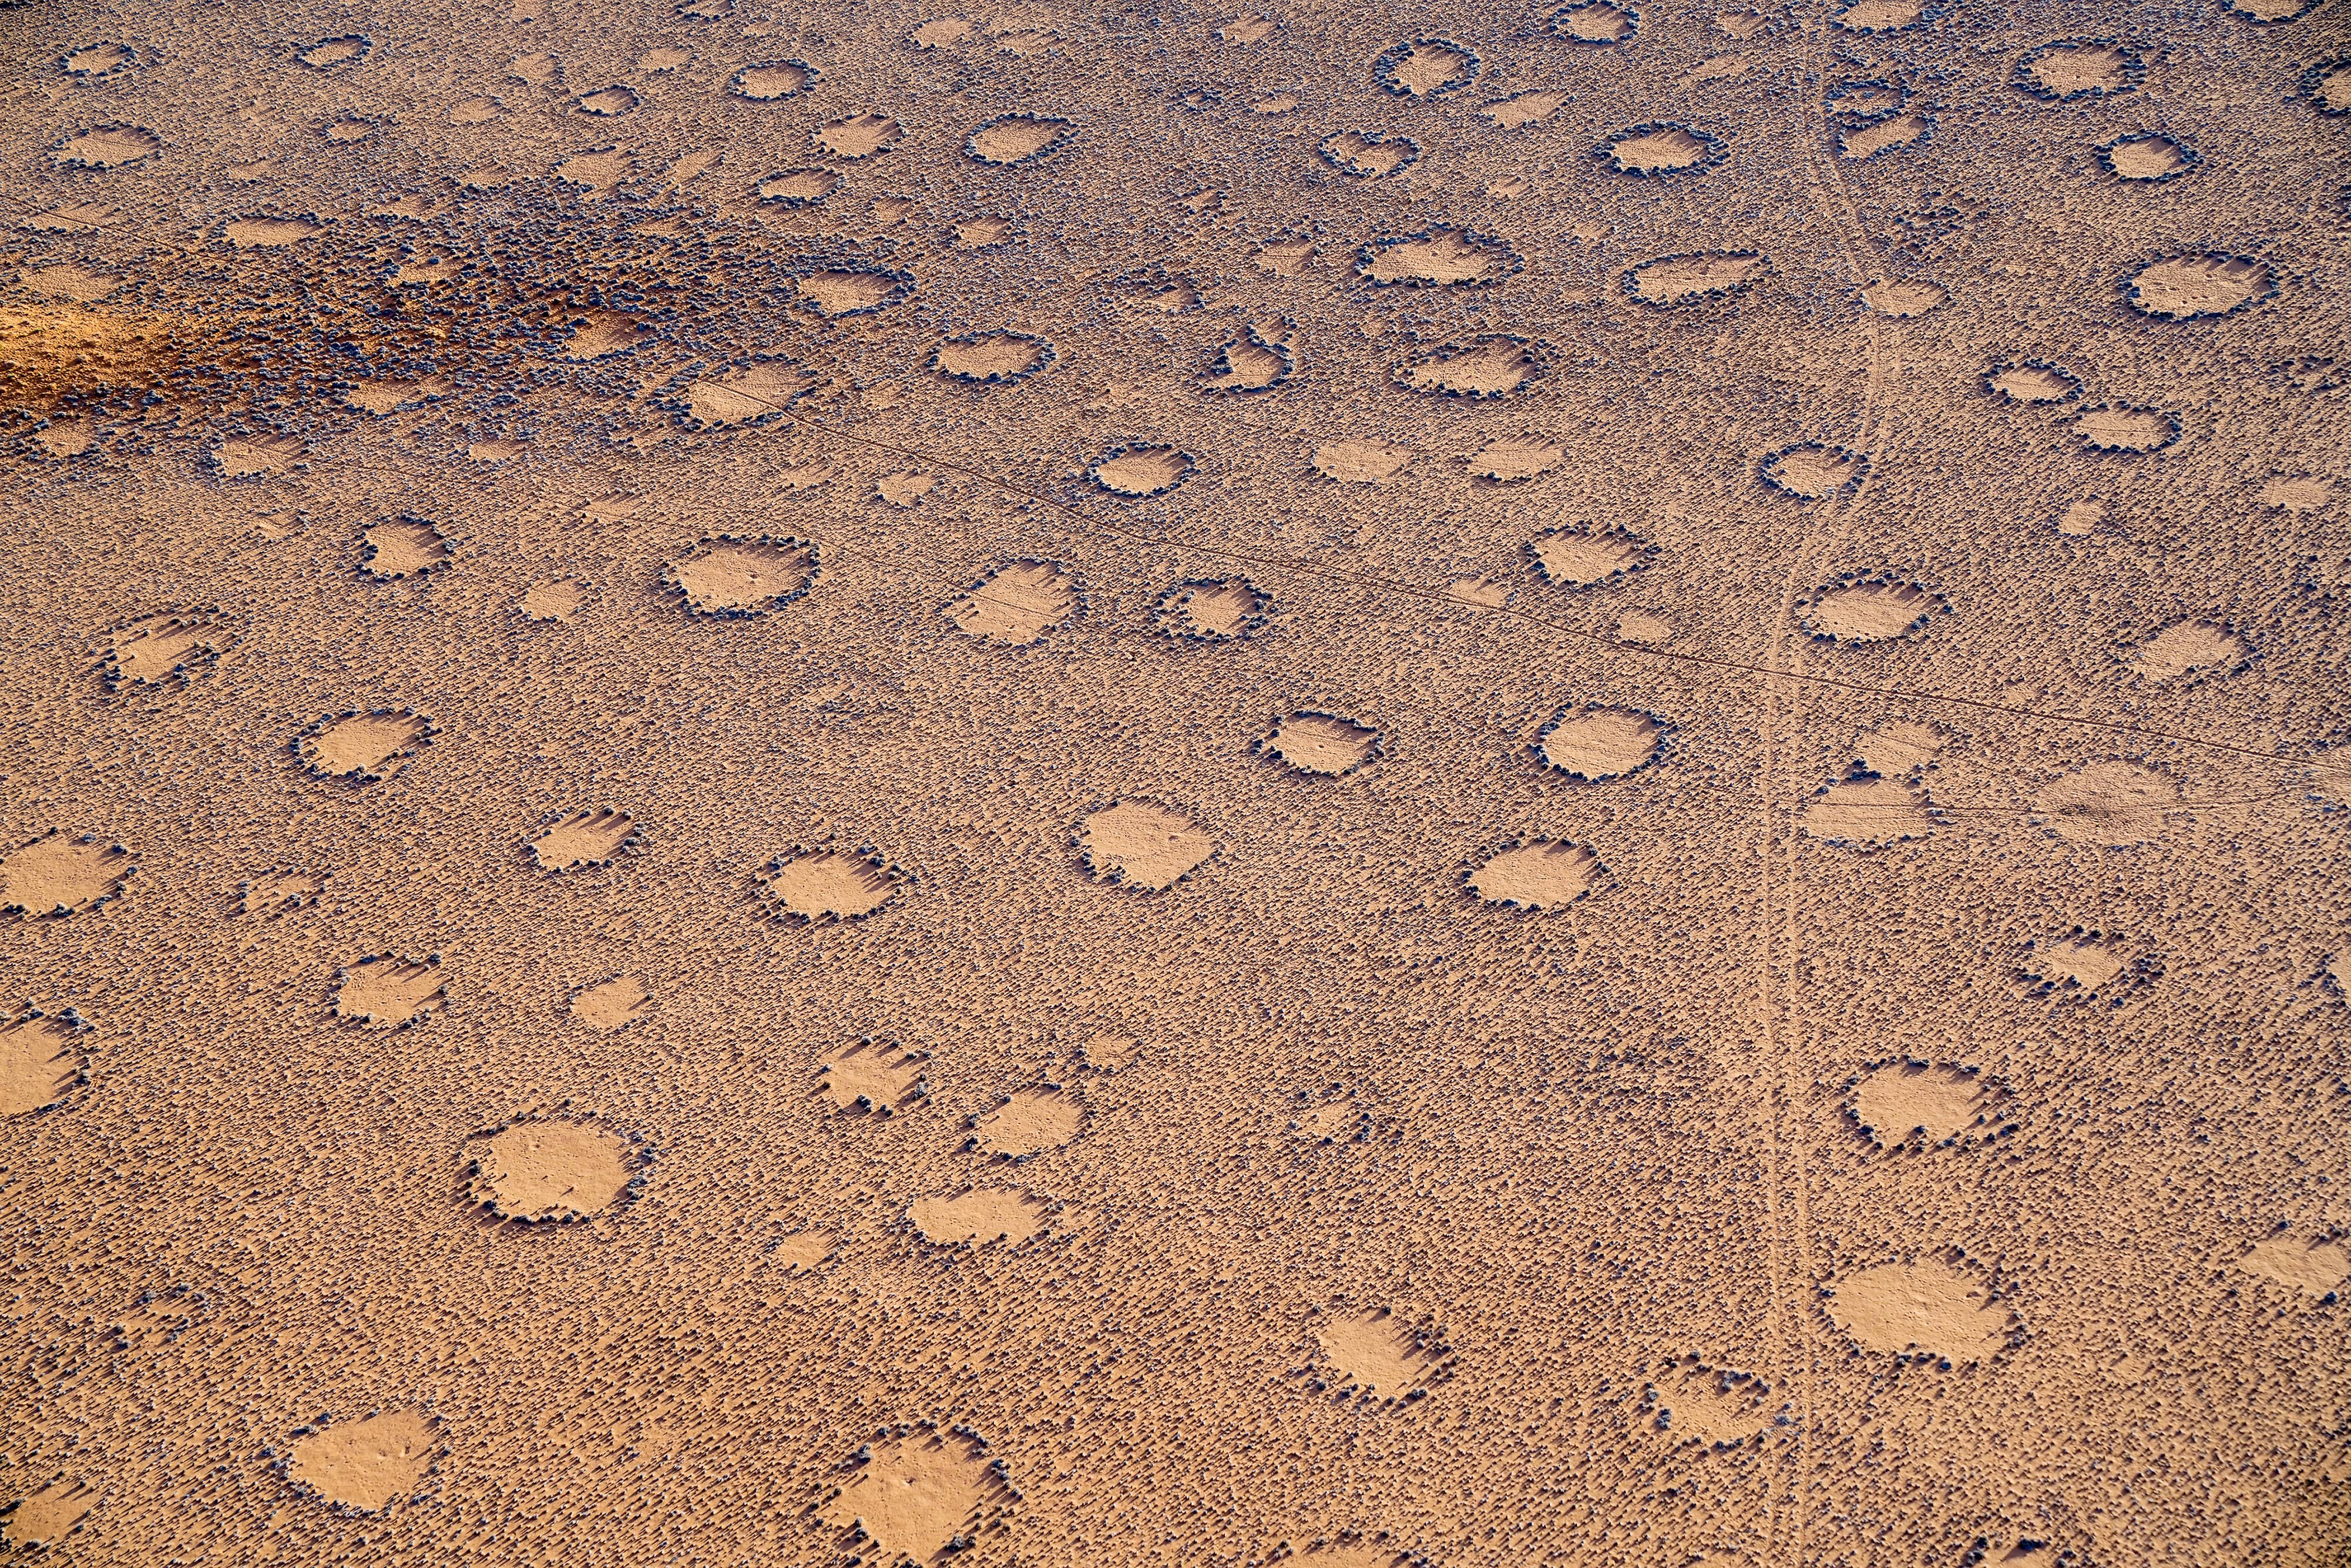 Des cercles de fées dans une plaine en Namibie. © Brian Scantlebury, Adobe Stock